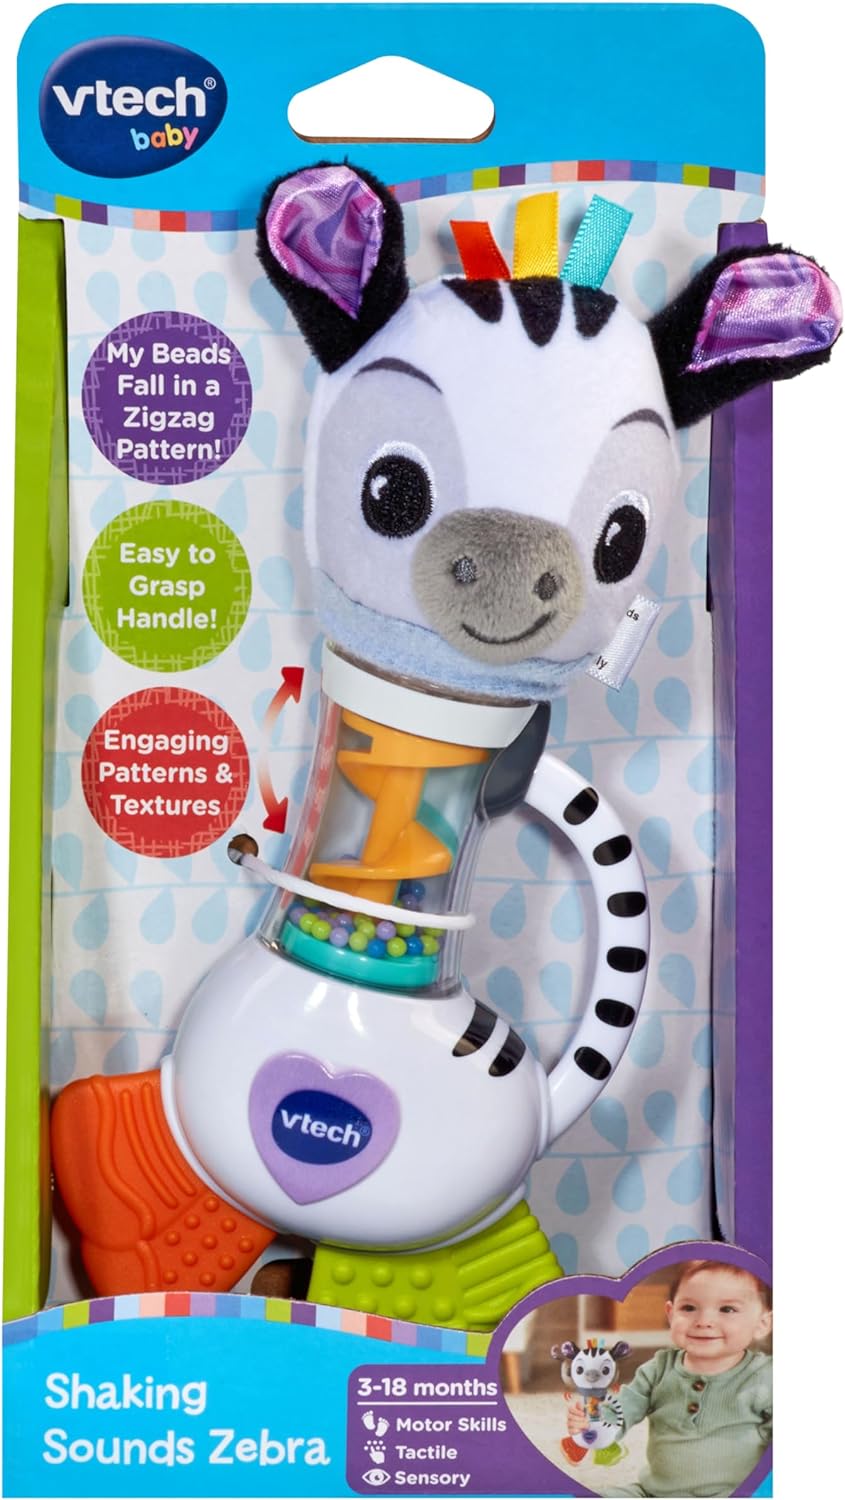 VTech Baby Shaking Sounds Zebra, Rainmaker Toy, Chocalho com cores brilhantes, padrões e texturas para brincadeiras sensoriais, presente para bebês de 3, 6, 9, 12 meses +, versão em inglês